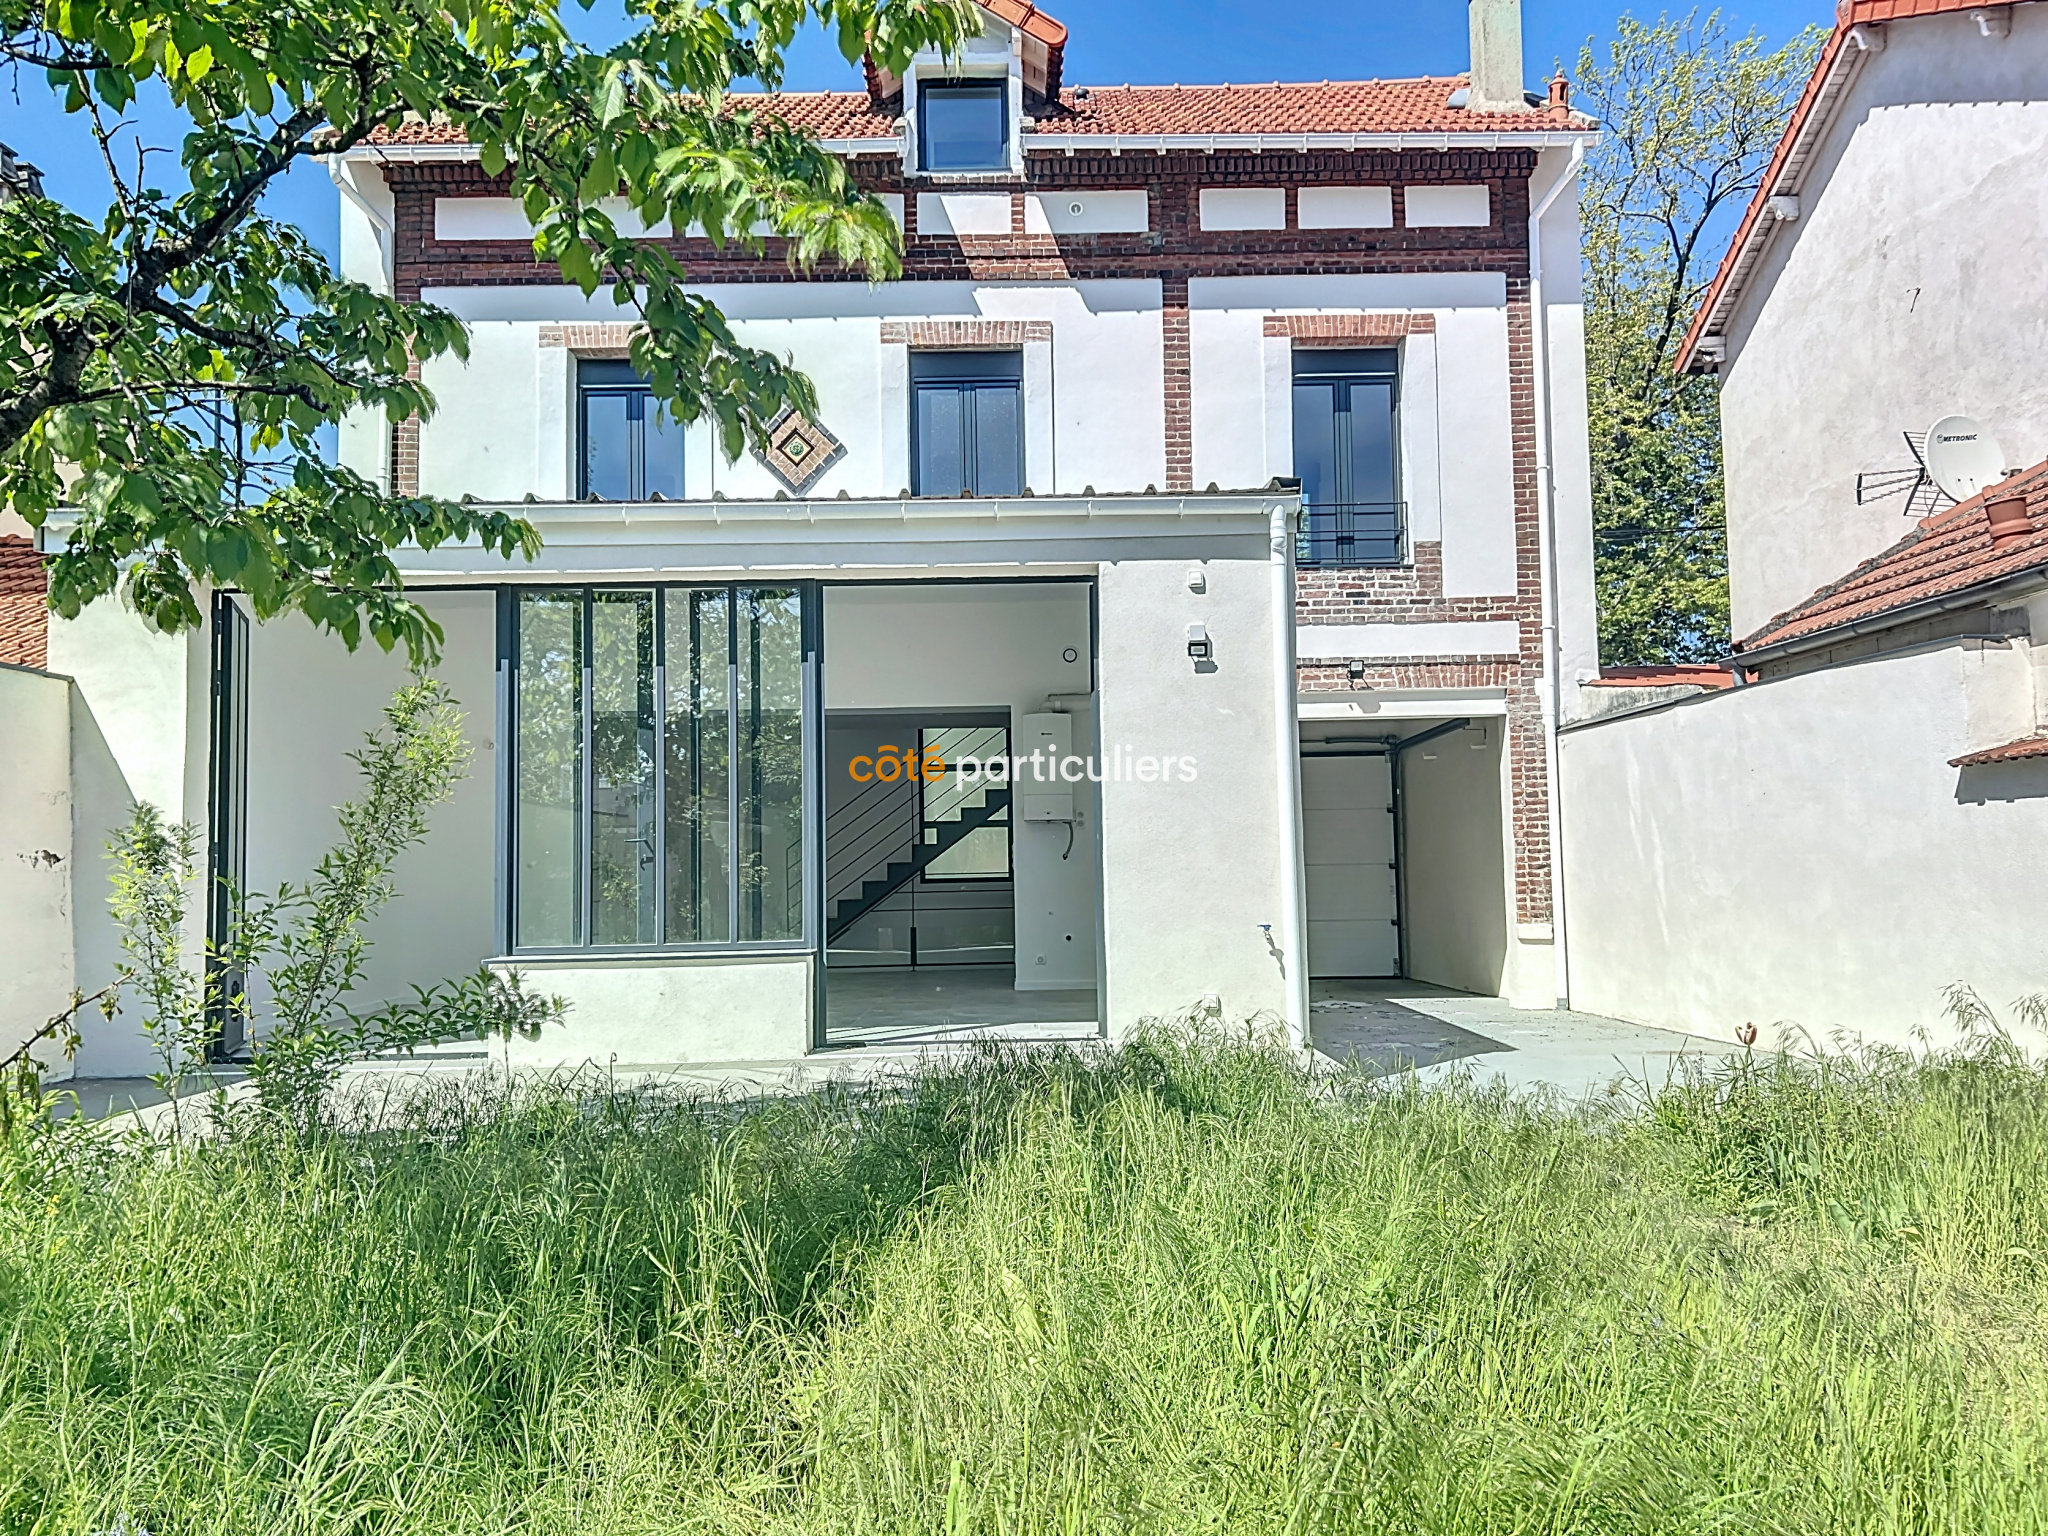 Vente Maison 140m² 5 Pièces à Saint-Maur-des-Fossés (94100) - Côté Particuliers